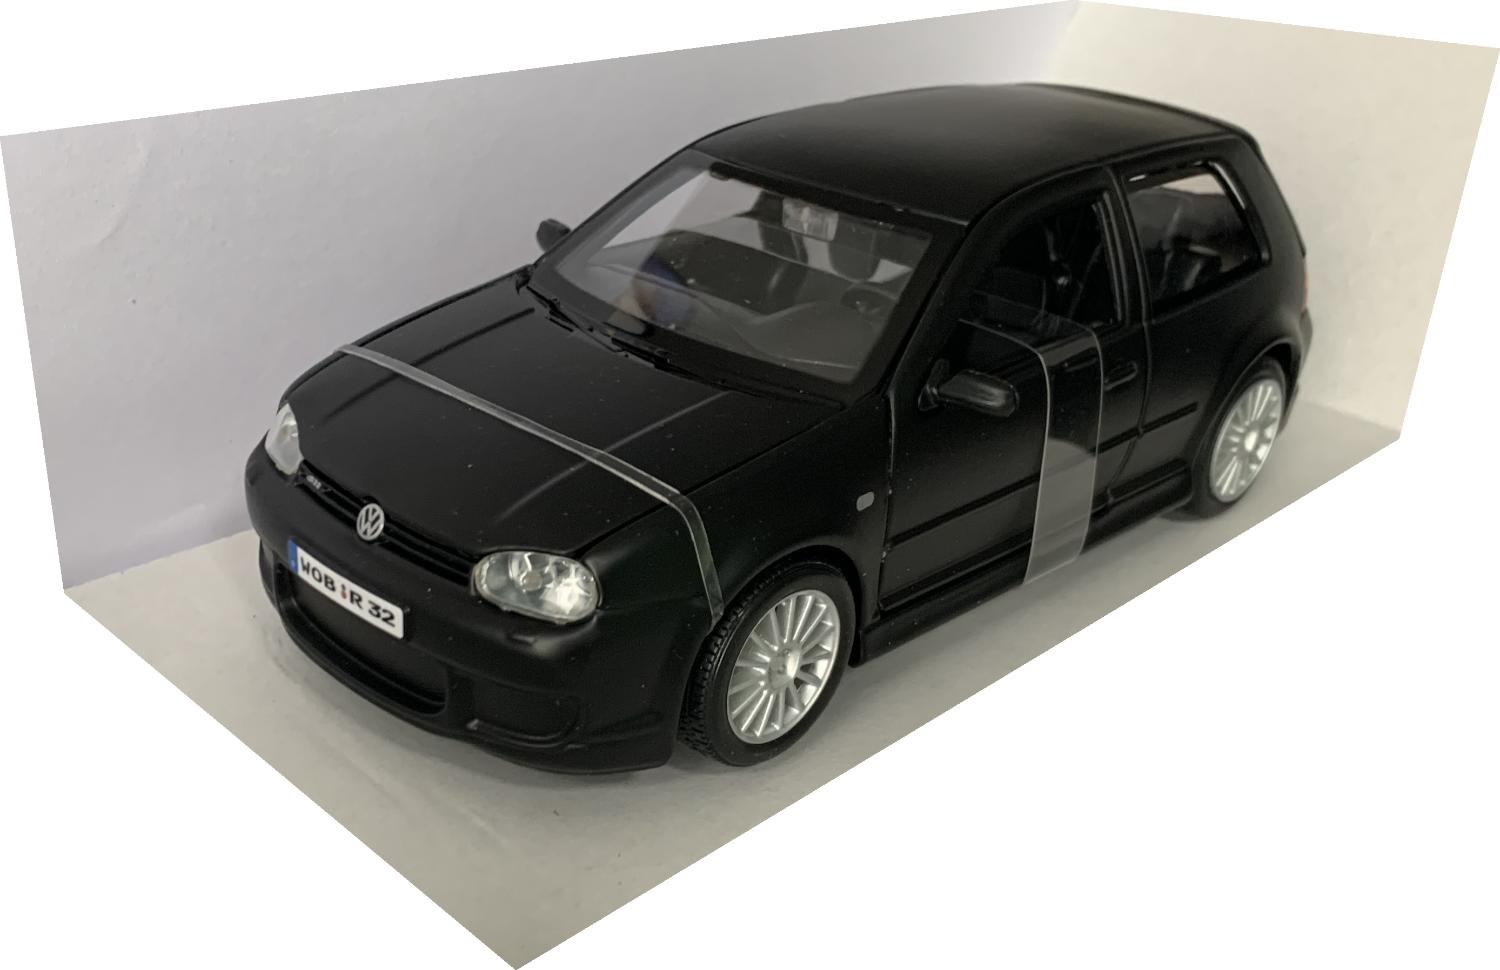 VW Golf R32 mark 4, in matt black 1:24 scale model from Maisto